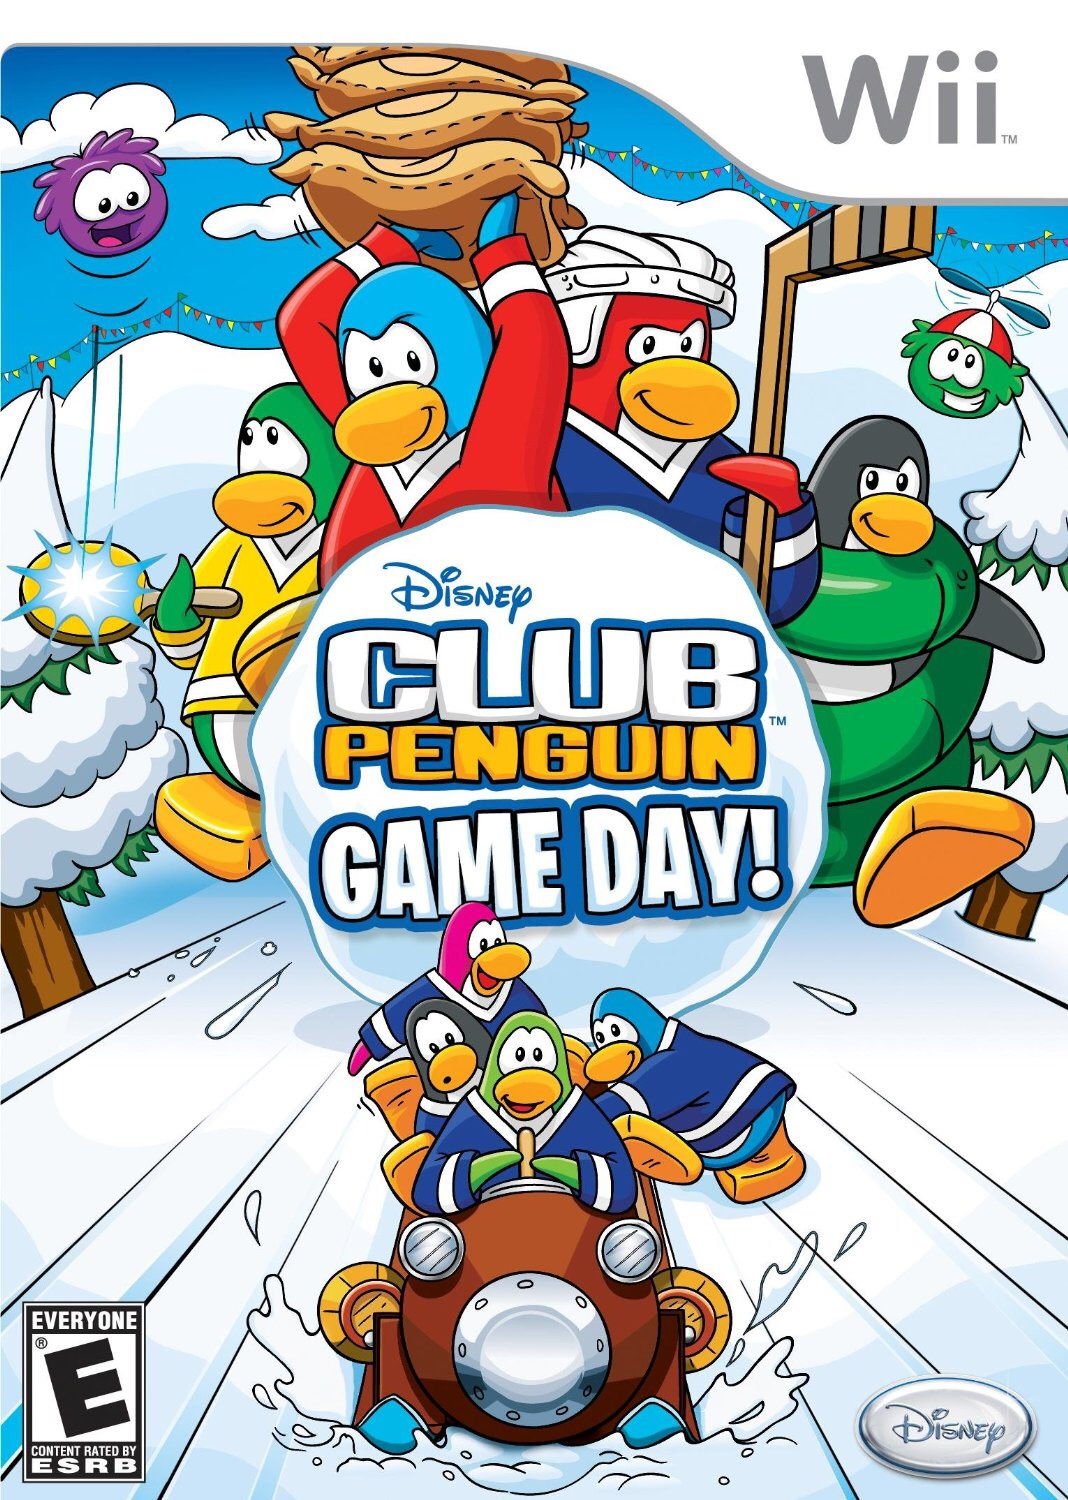 Prisionero de guerra Inmoralidad Regreso Club Penguin: ¡Día de Juegos! | Club Penguin Wiki | Fandom